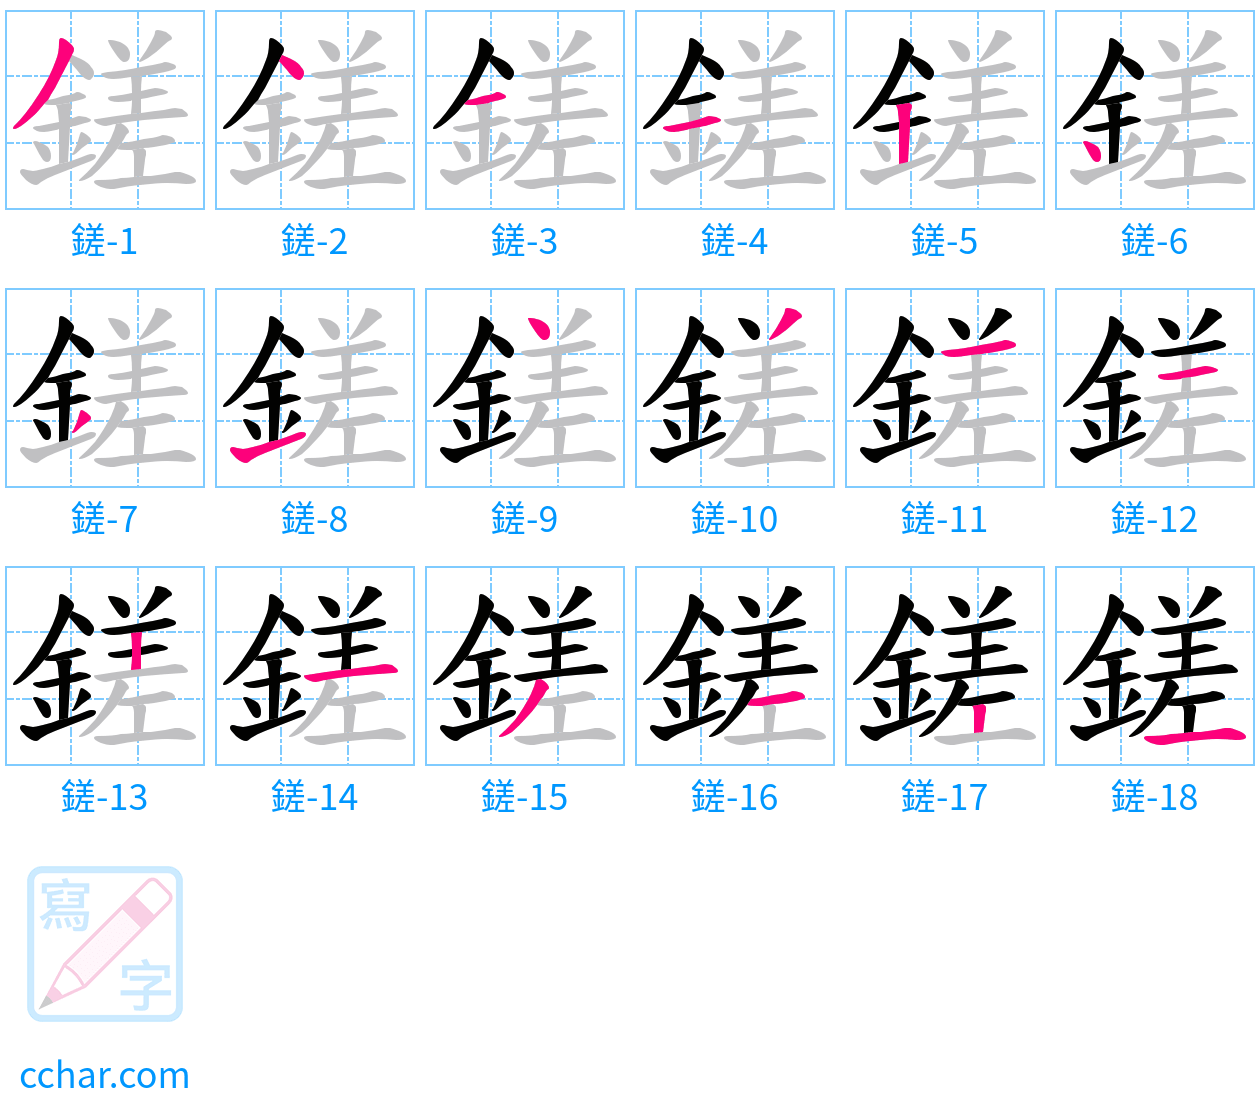 鎈 stroke order step-by-step diagram